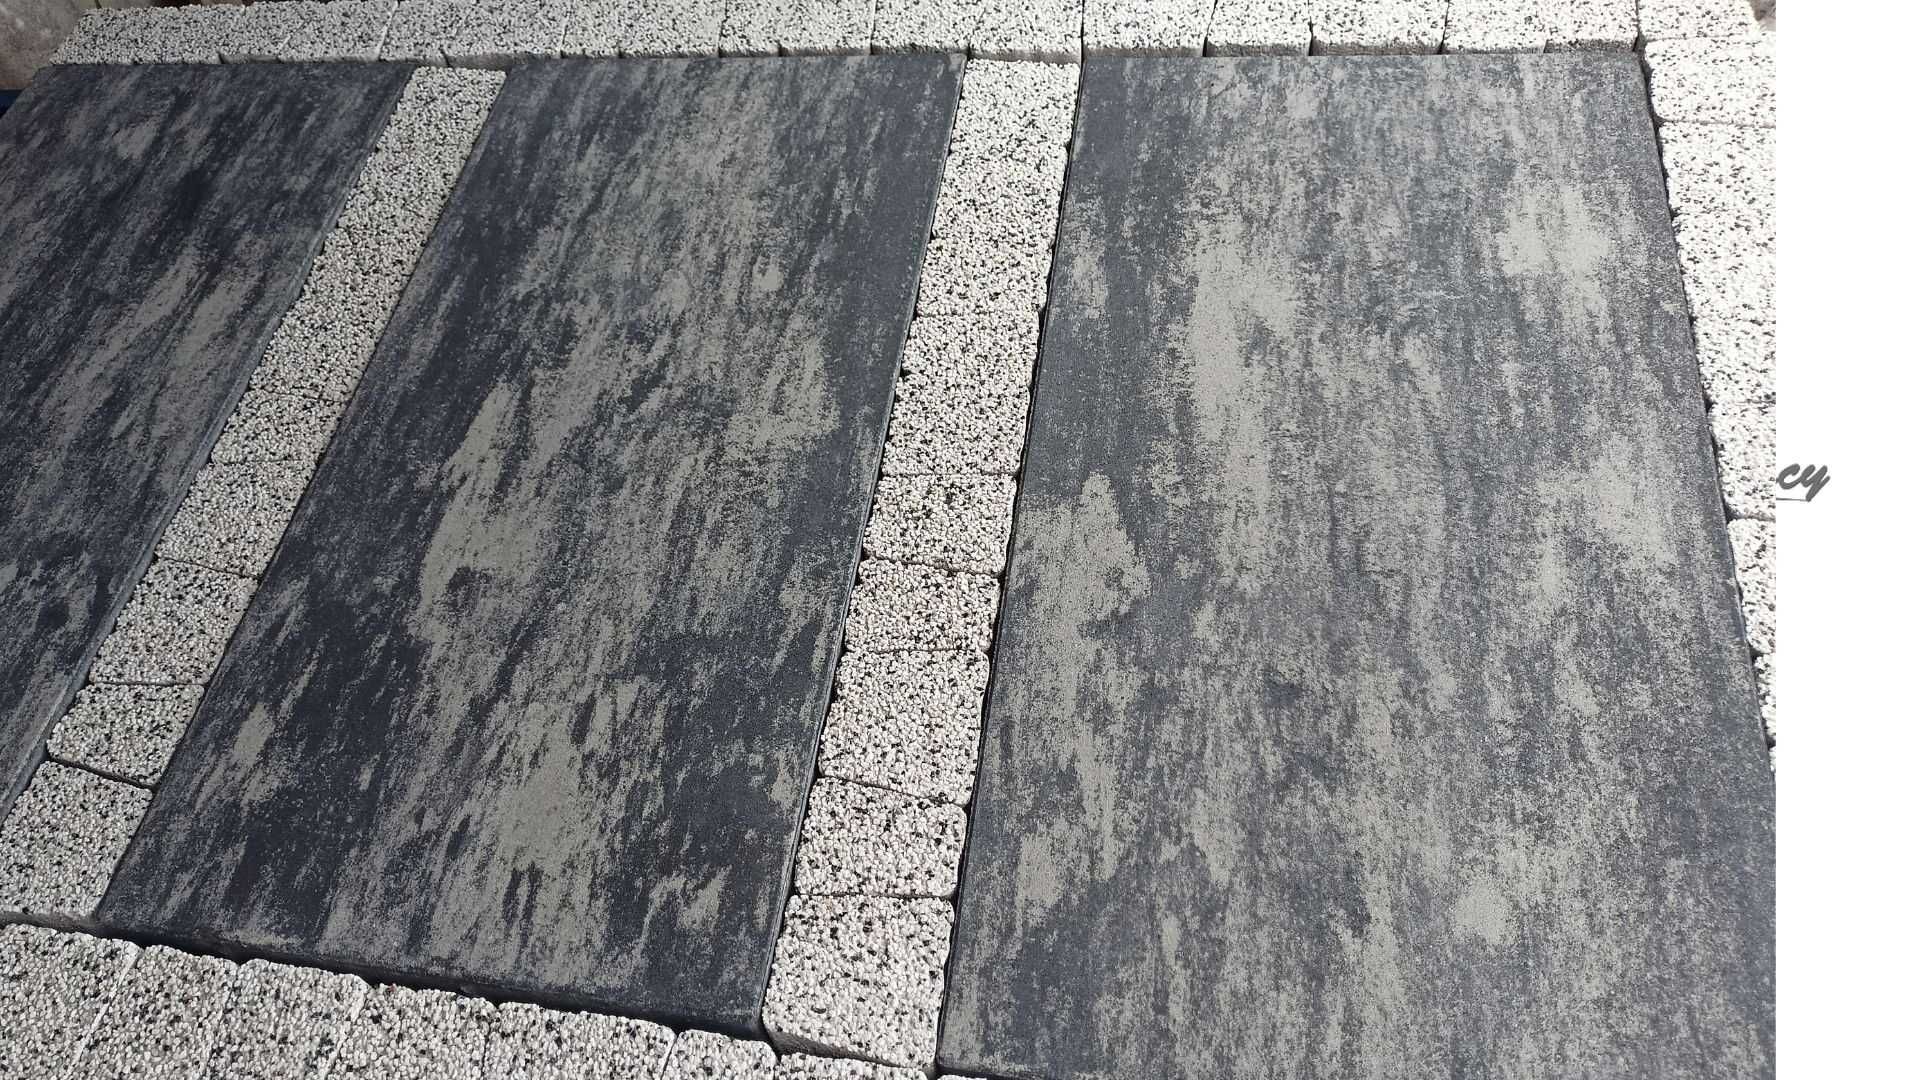 Płyta betonowa tarasowa chodnikowa KOSTKA BRUKOWA 80x40cm duży format